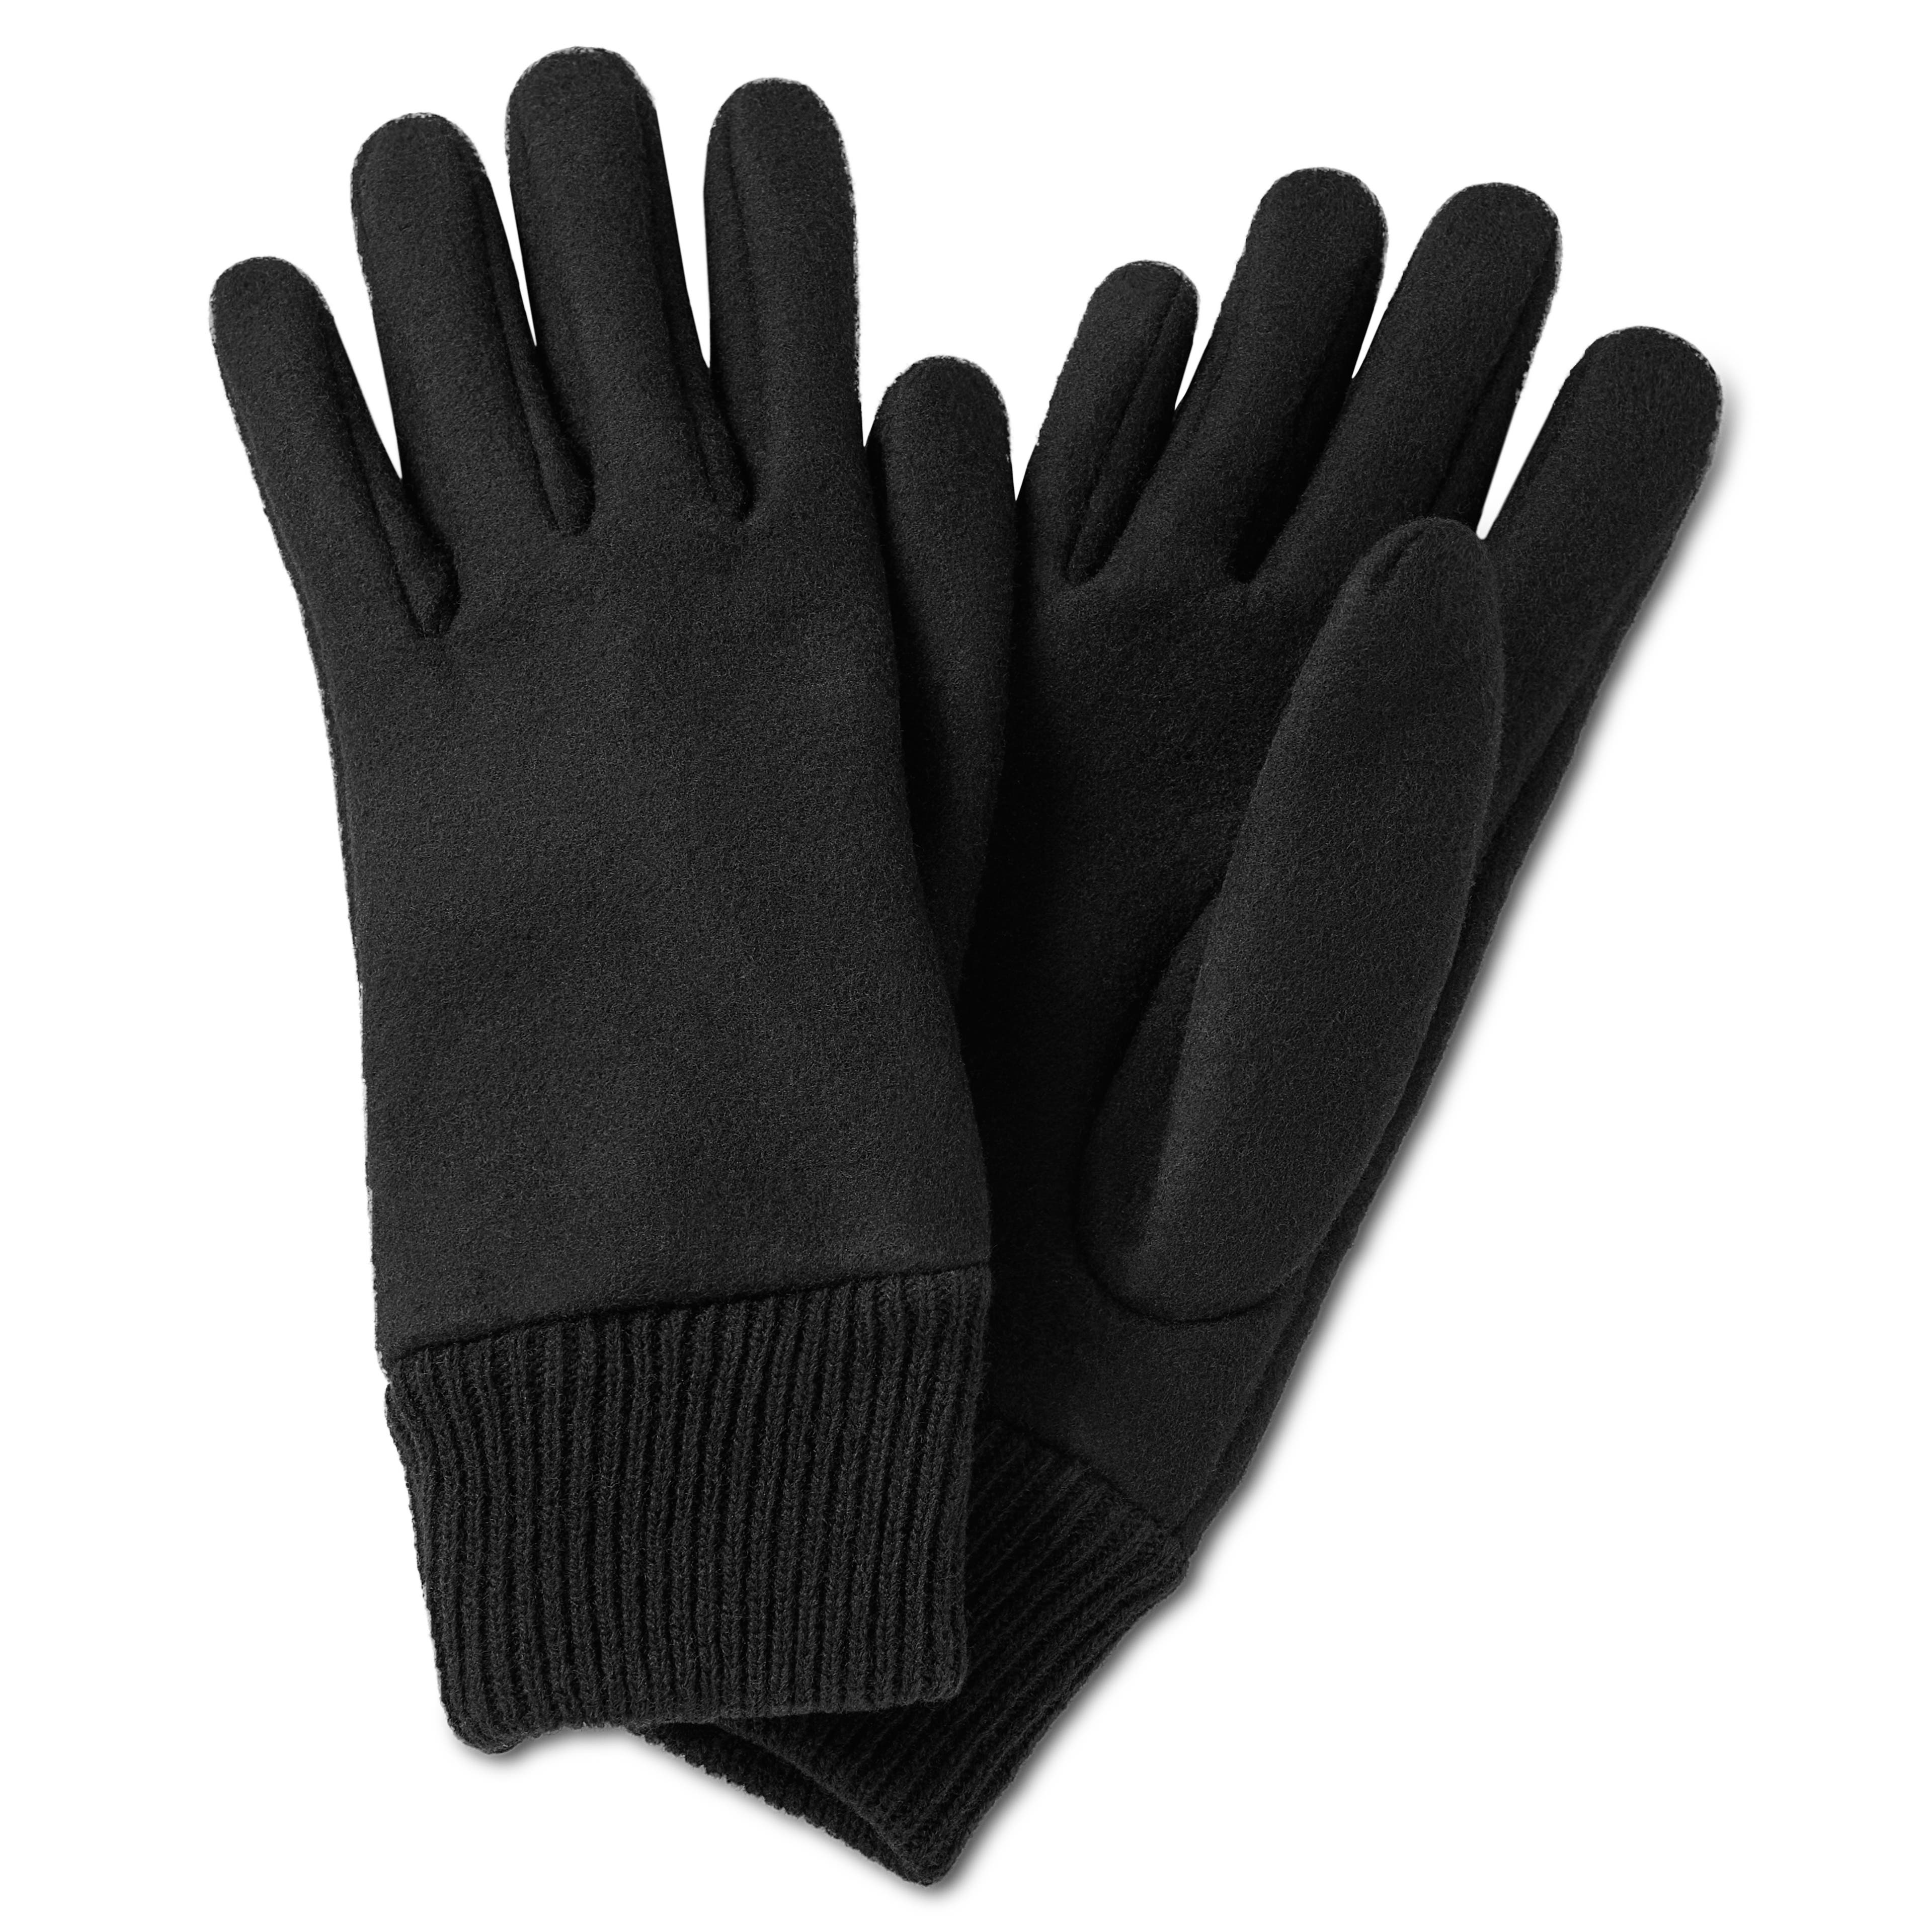 Hiems | Handschuhe aus schwarzer Wolle